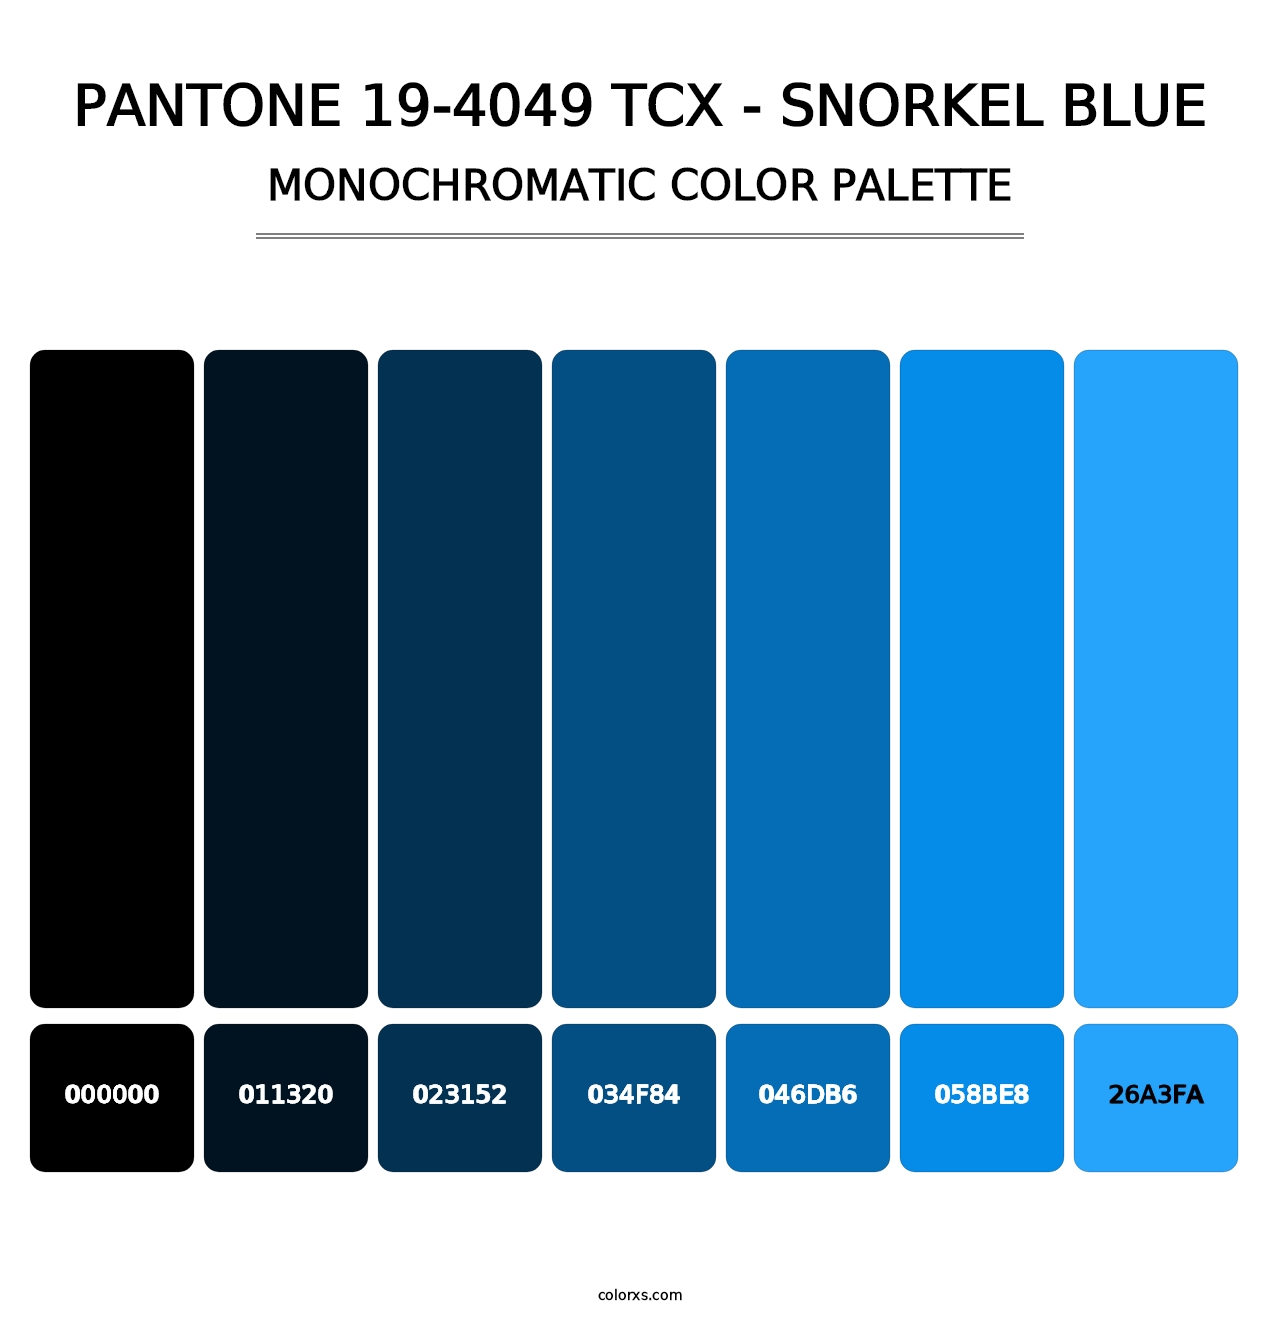 PANTONE 19-4049 TCX - Snorkel Blue - Monochromatic Color Palette